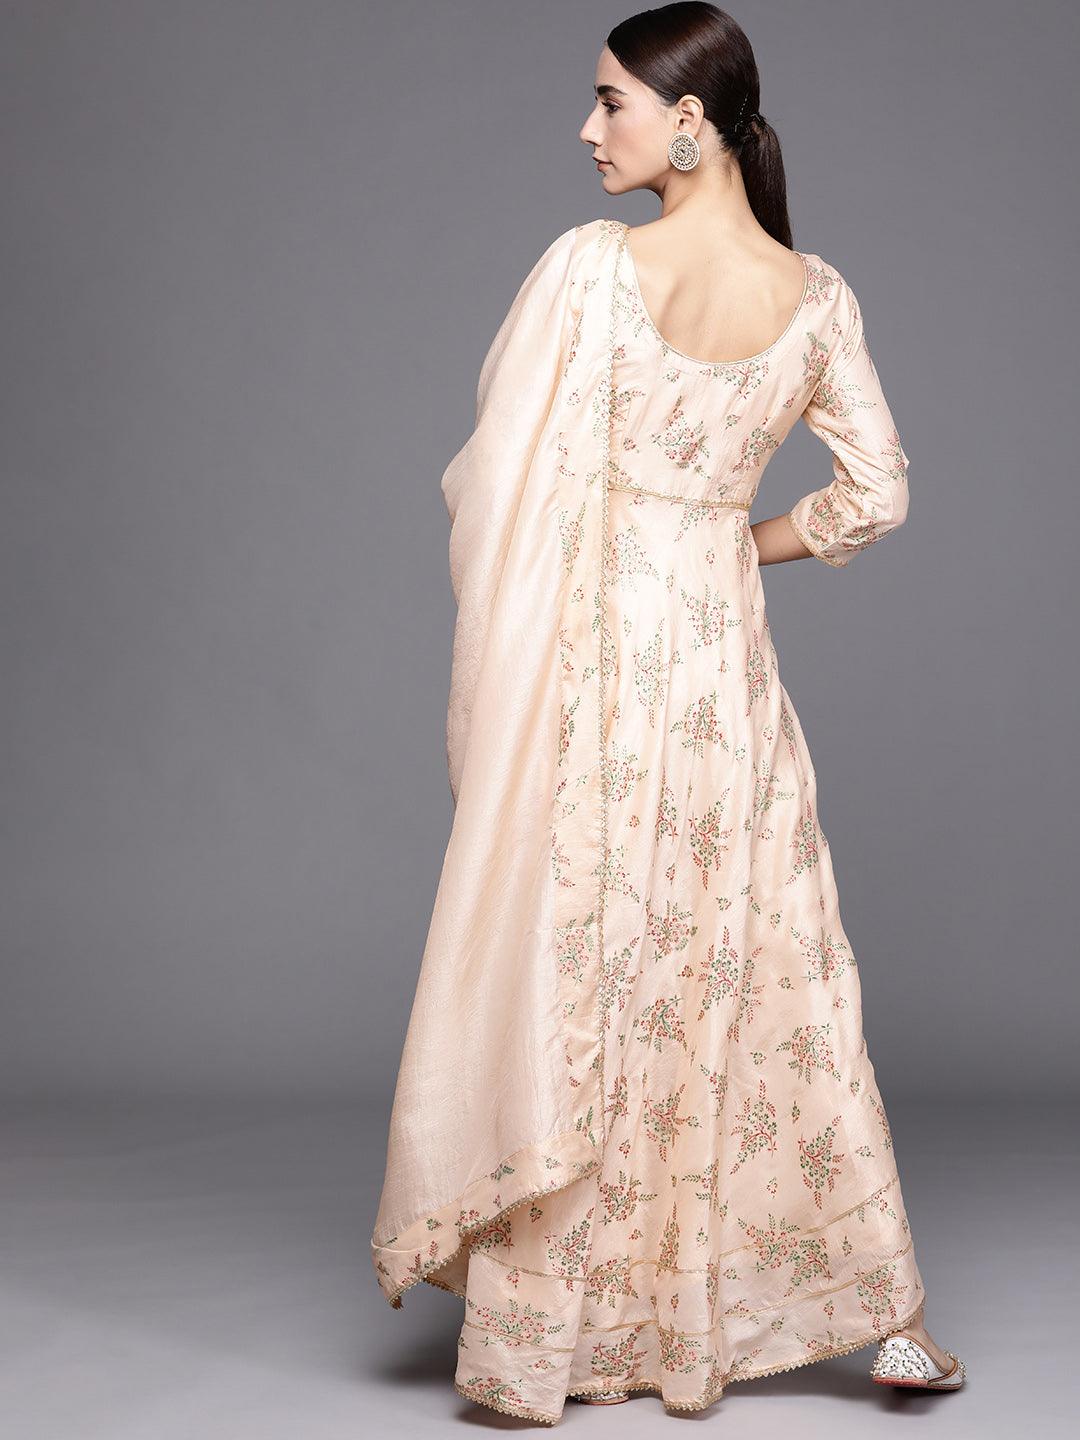 Peach Printed Silk Blend Dress With Dupatta - Libas